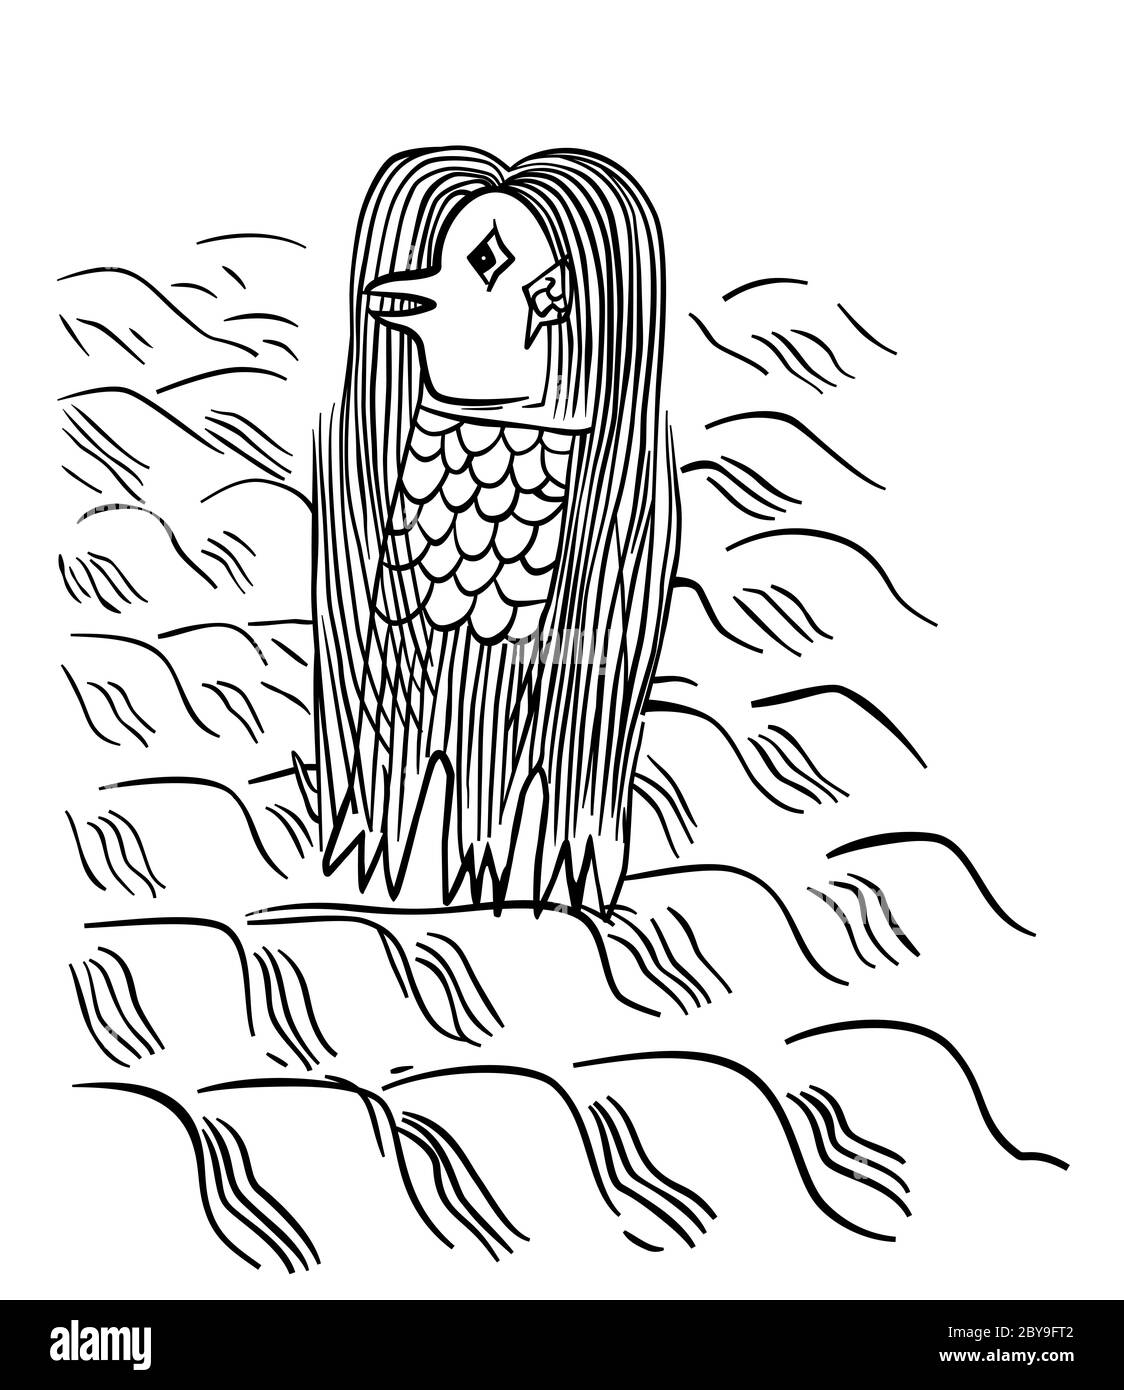 Amabie. Stampa di blocchi di legno giapponesi dal tardo periodo Edo. Sirena o merena, che emerge dal mare e profetizza un'epidemia o un raccolto abbondante. Foto Stock